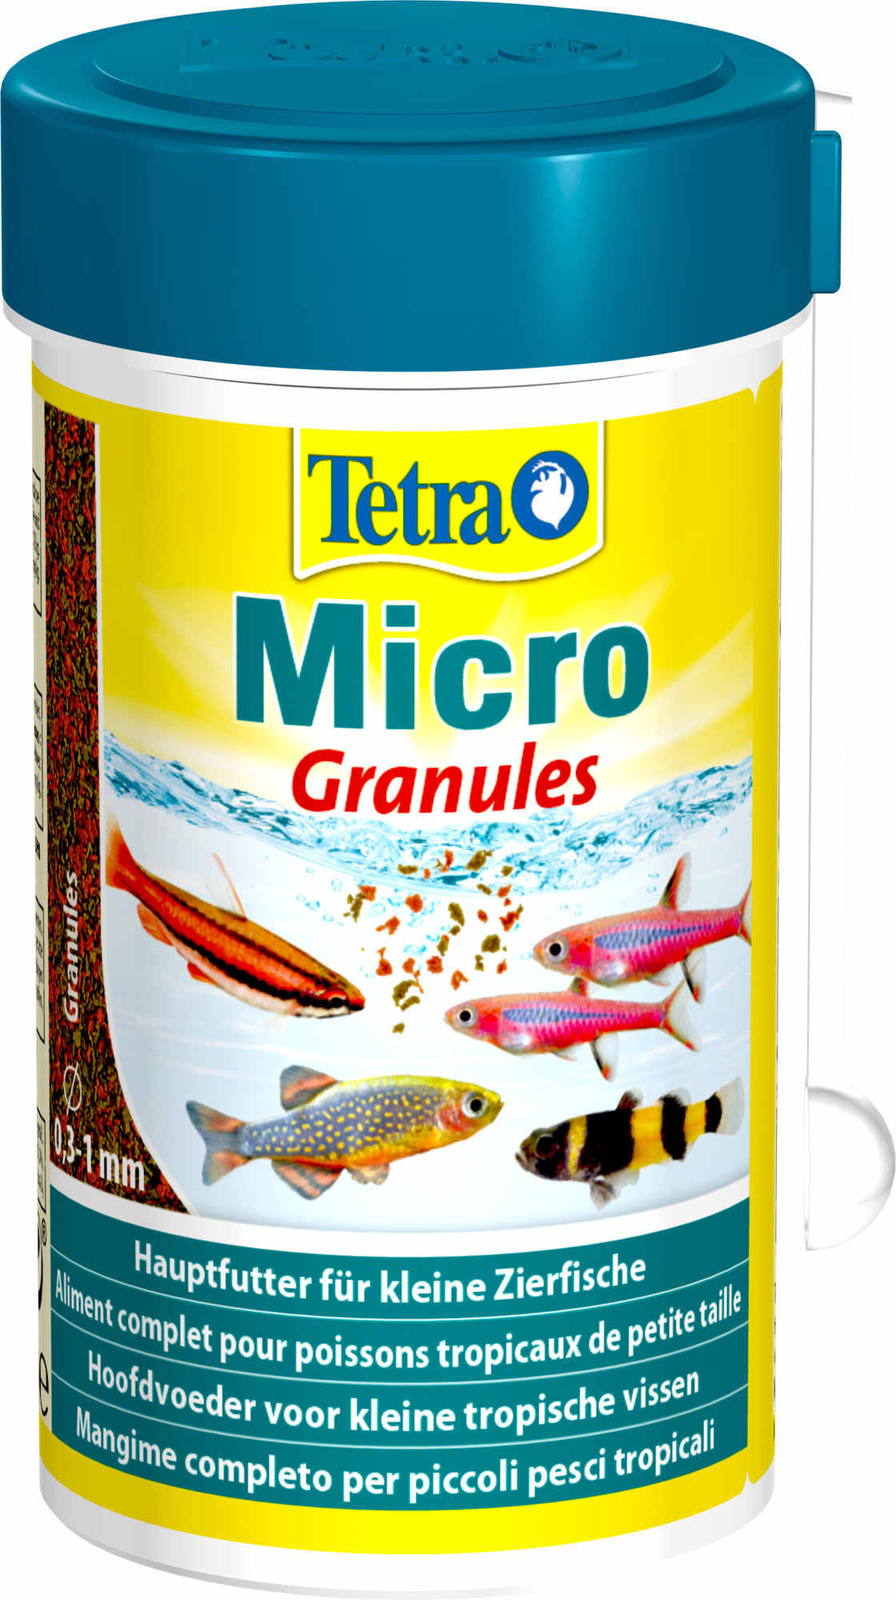 Tetra (корма) Tetra (корма) корм для всех видов мелких рыб, микрогранулы (45 г) tetra корма tetra корма корм для всех видов рыб хлопья 12 г